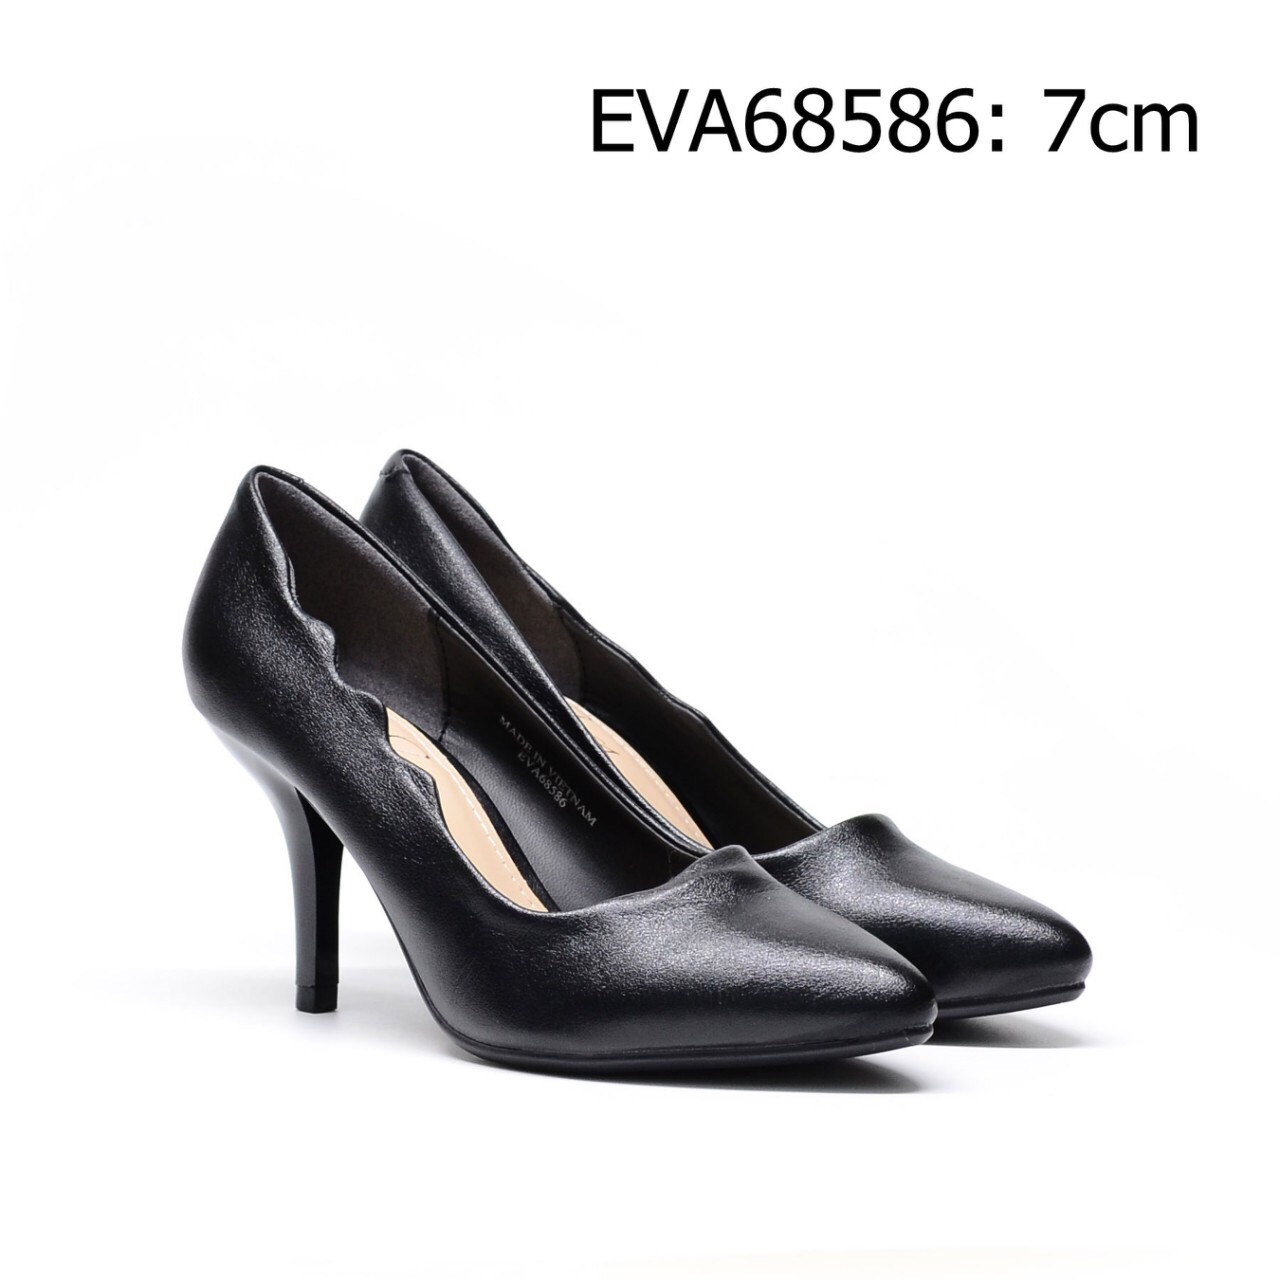 Giày cao gót EVA68586 thiết kế đơn giản đầy nữ tính, sang trọng